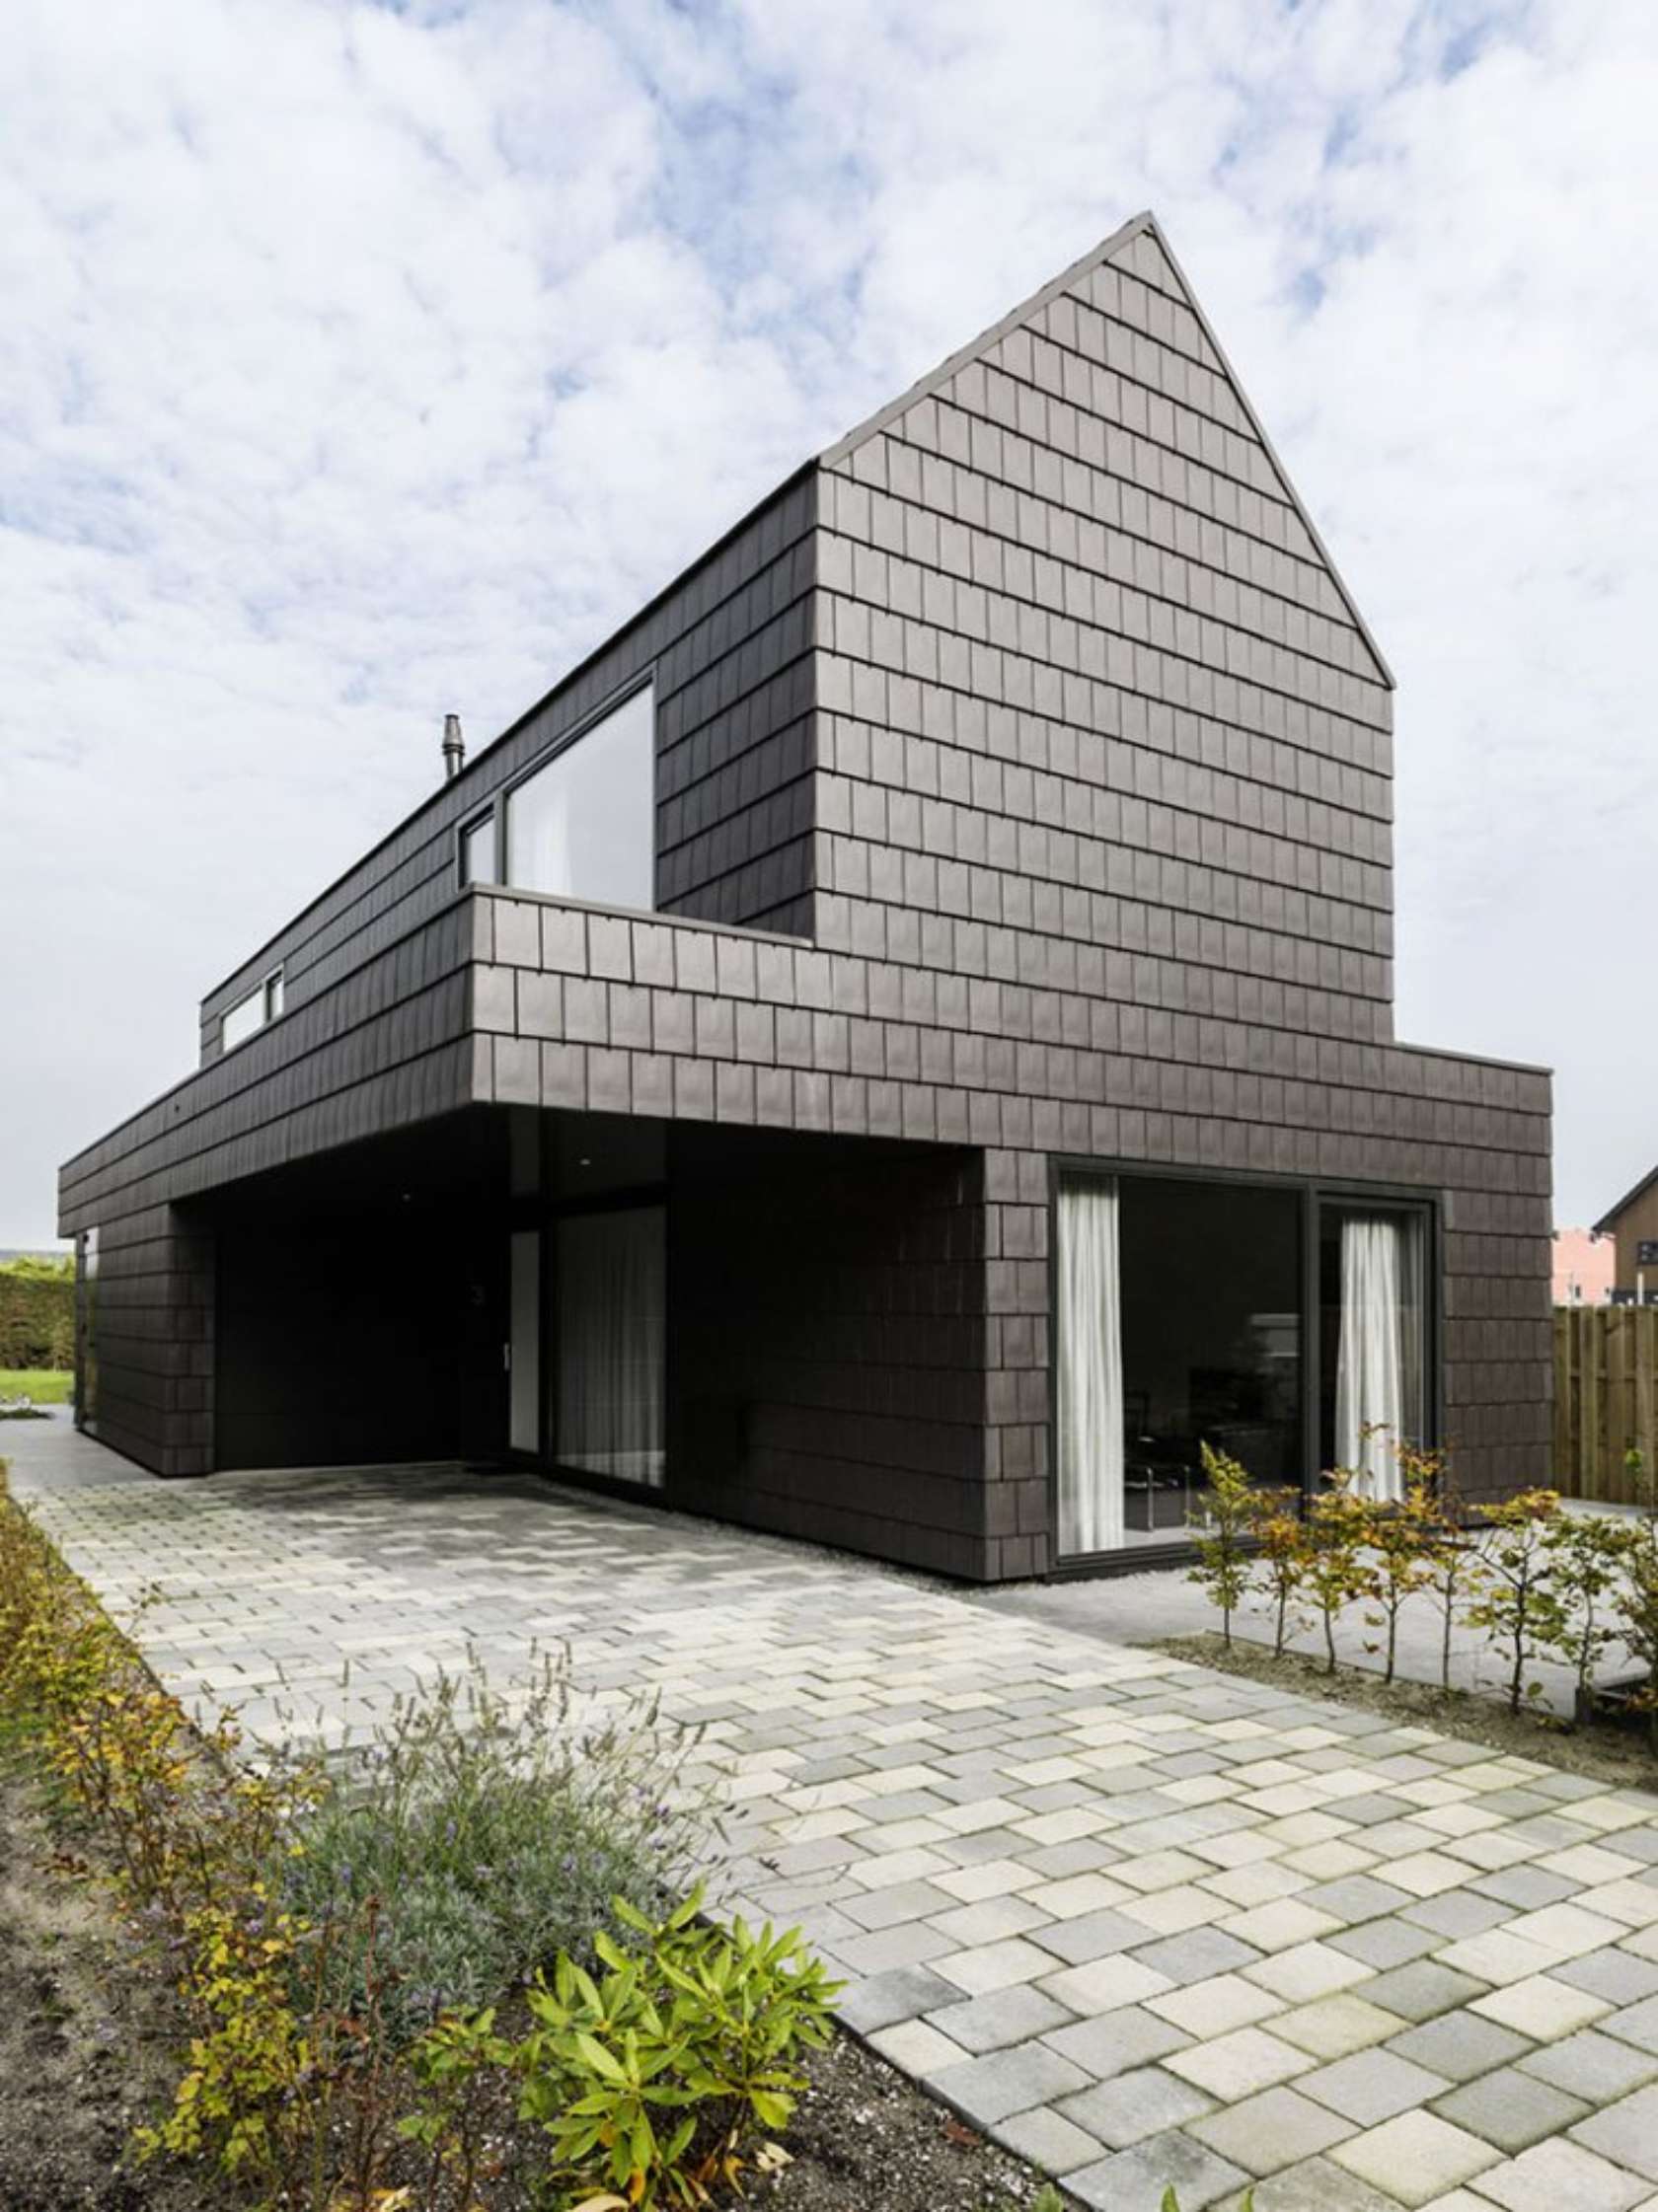 Неприступная холодная крепость чёрного цвета – v-house от baksvan wengerden architecten, алкмар, нидерланды